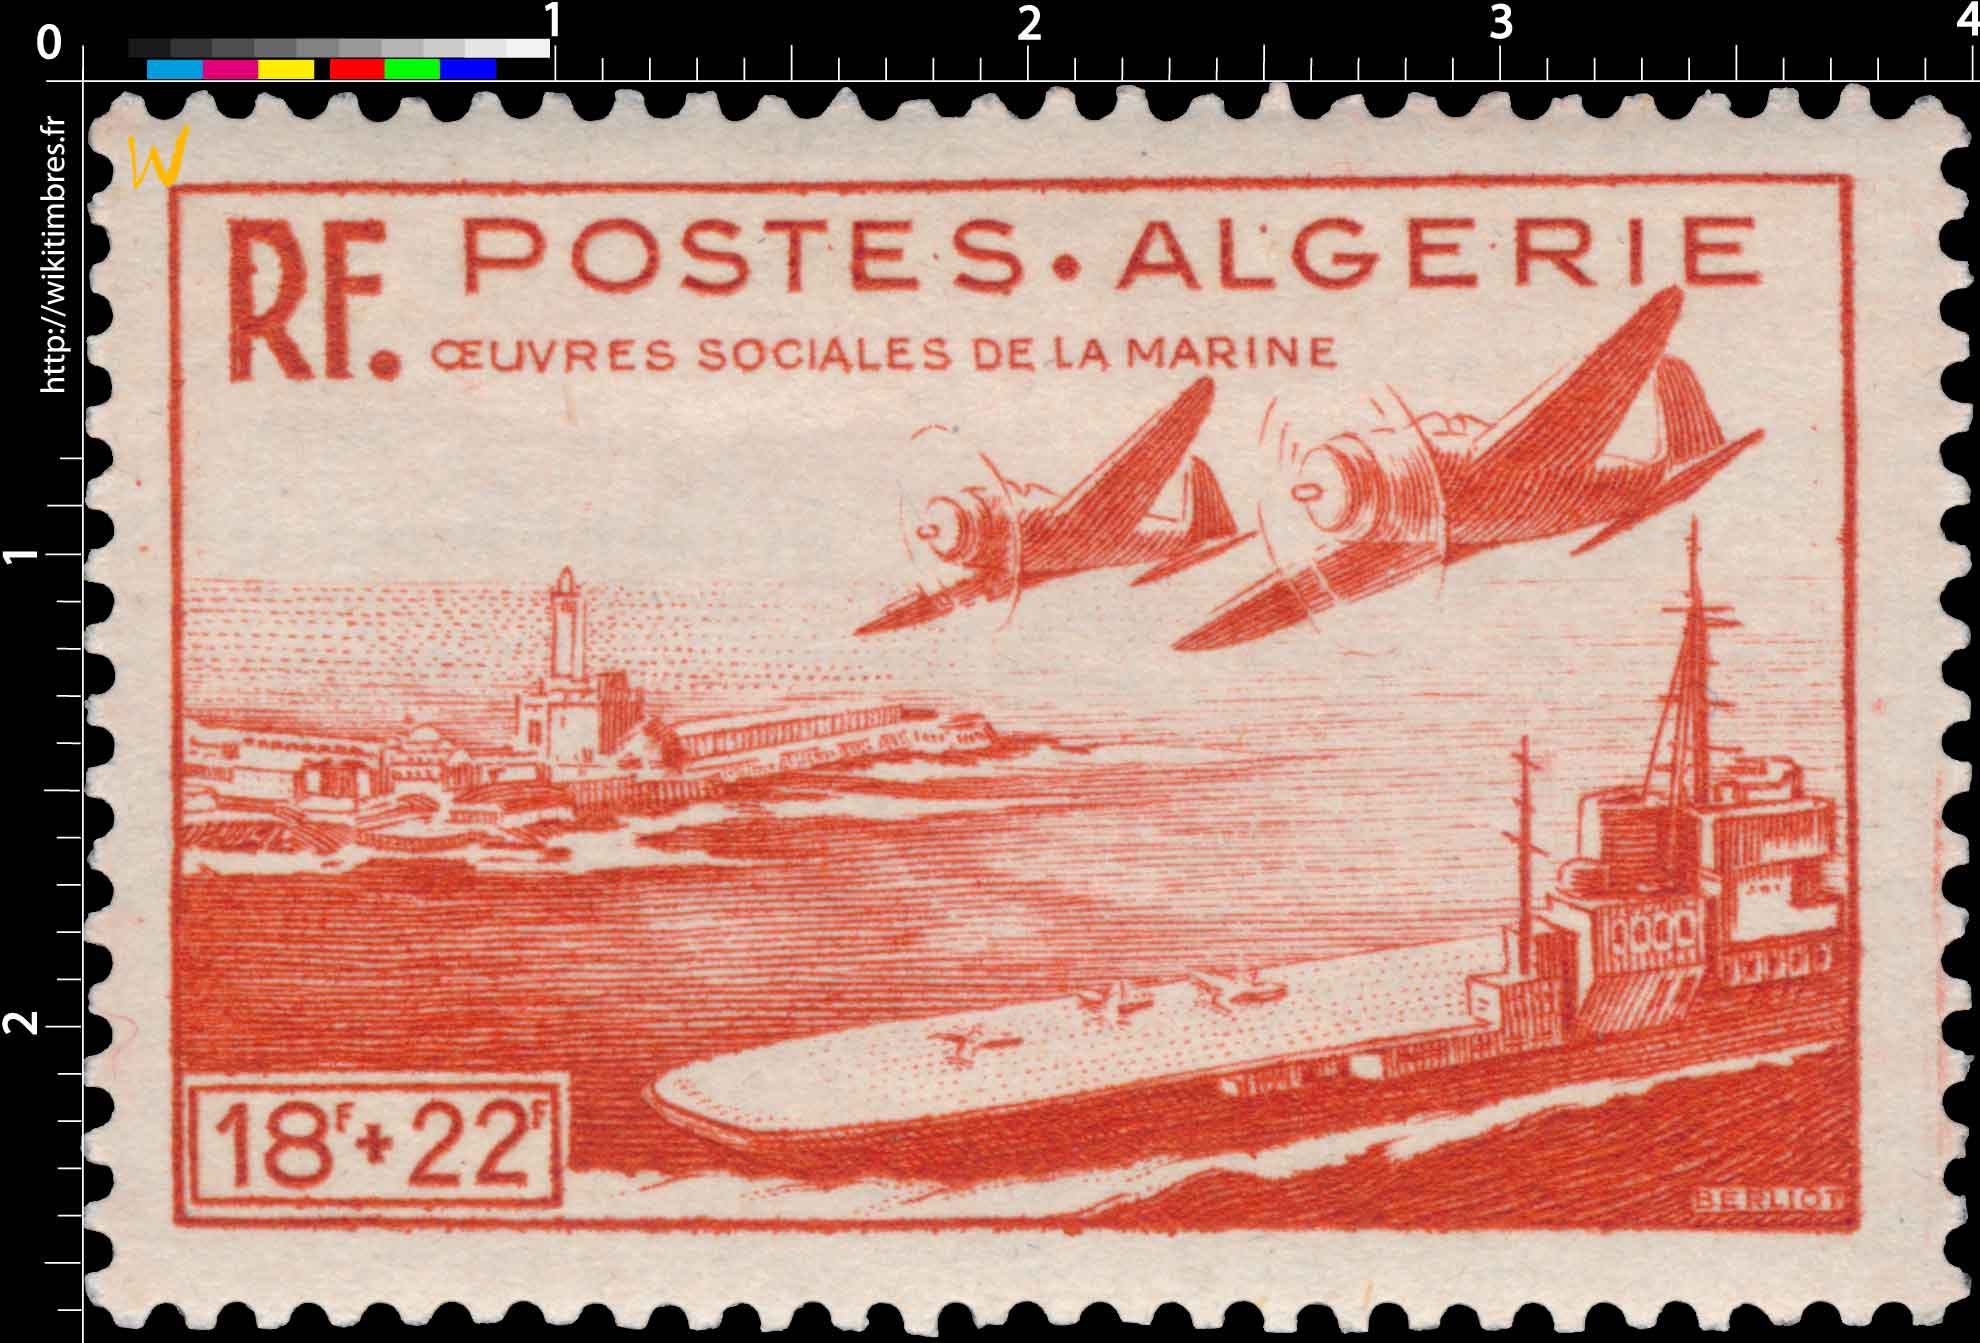 Algérie - Œuvres sociales de la marine